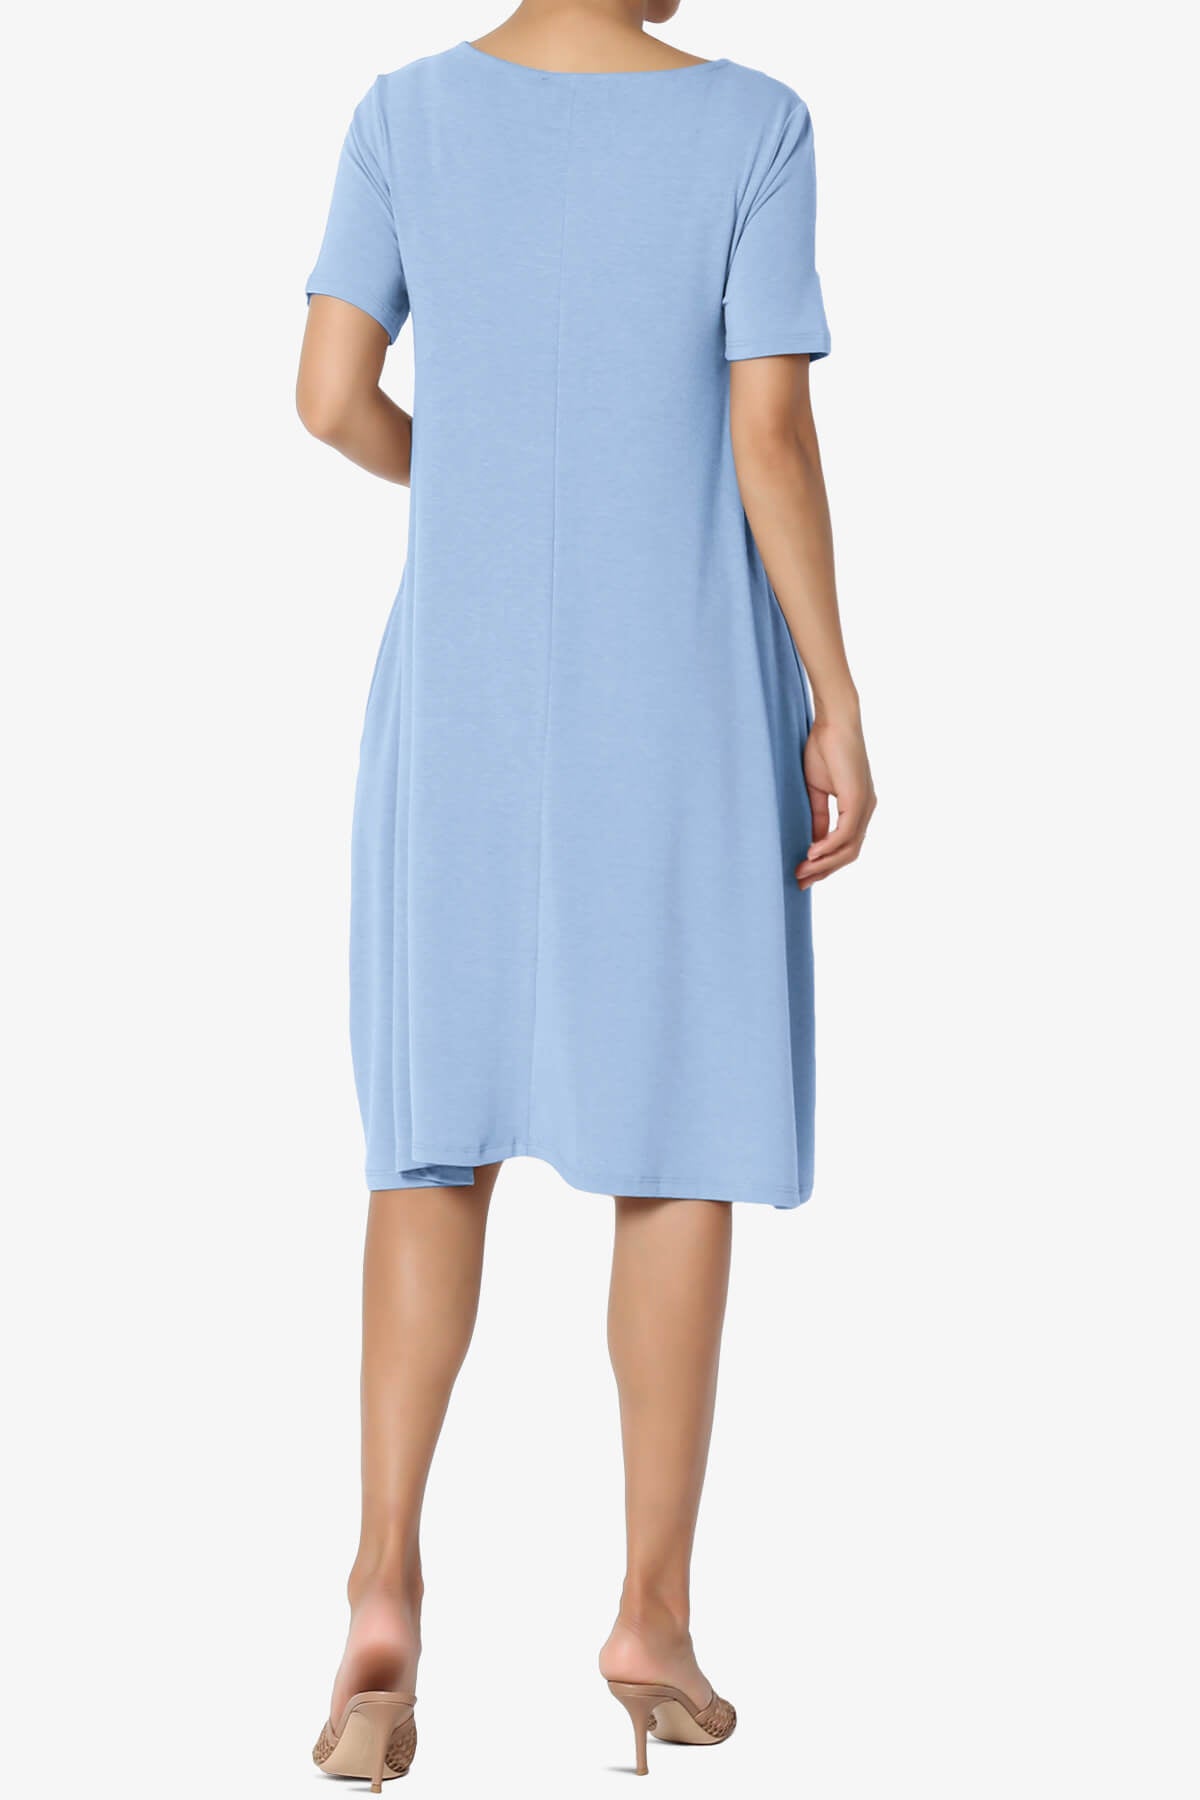 Allie Short Sleeve Jersey A-Line Dress LIGHT BLUE_2